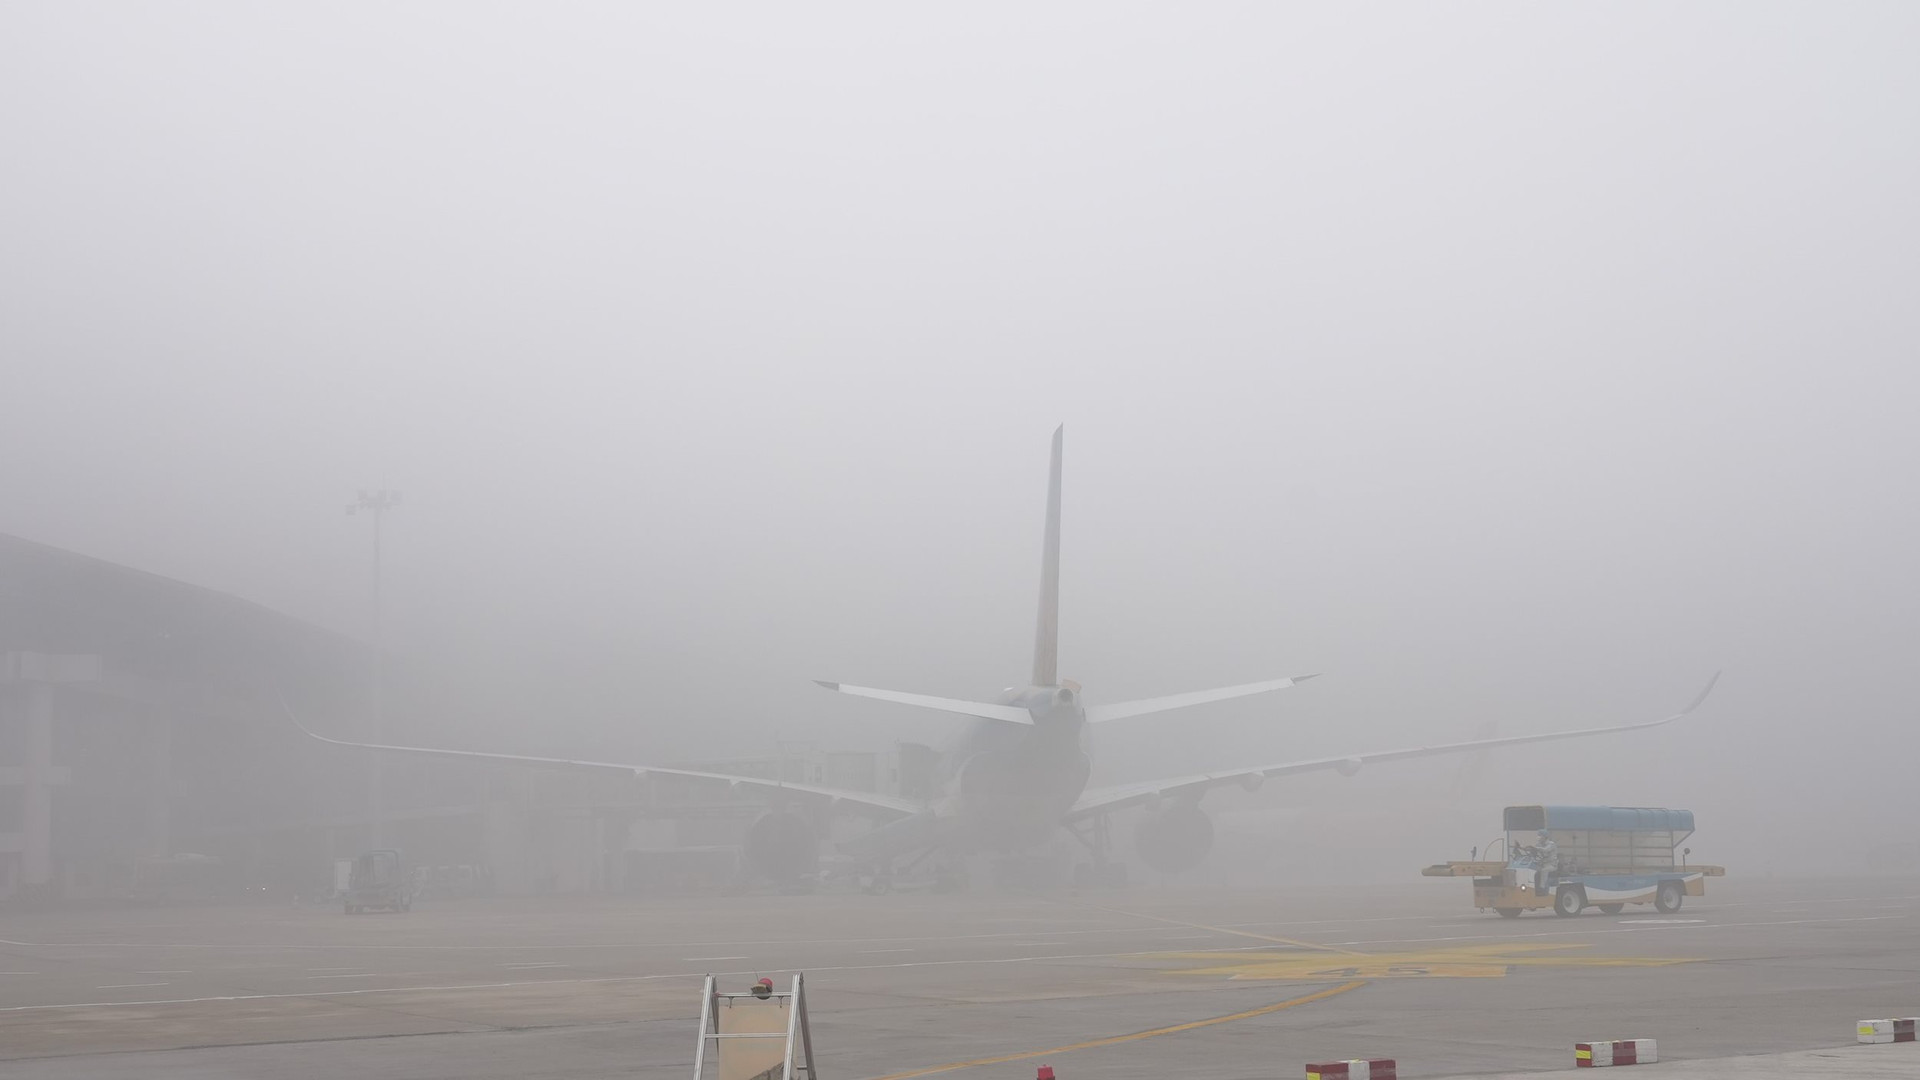 Cục Hàng không Việt Nam chỉ đạo 'nóng' về hoạt động bay khi thời tiết xấu - Ảnh 1.